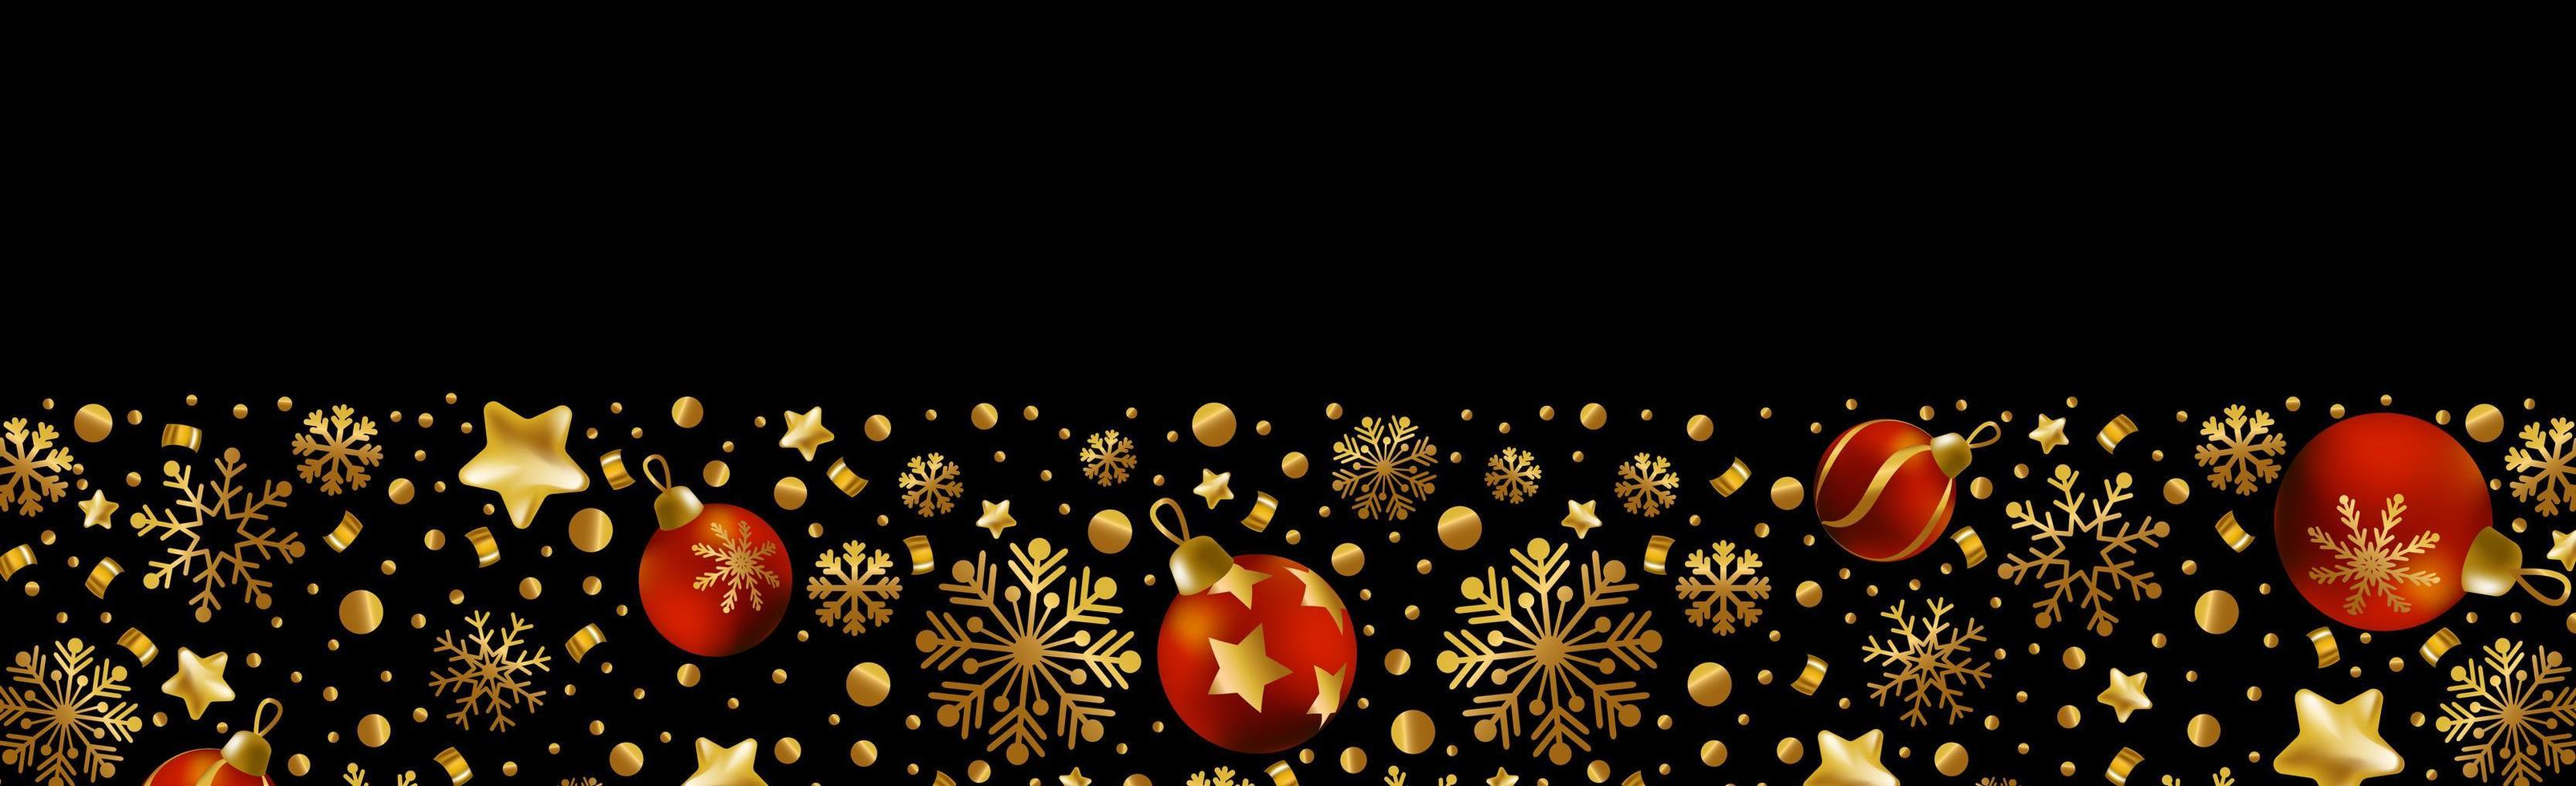 felice anno nuovo e buon natale biglietto di auguri, banner per le vacanze, poster web. sfondo scuro con brillanti fiocchi di neve dorati e palle di natale rosse - vettore